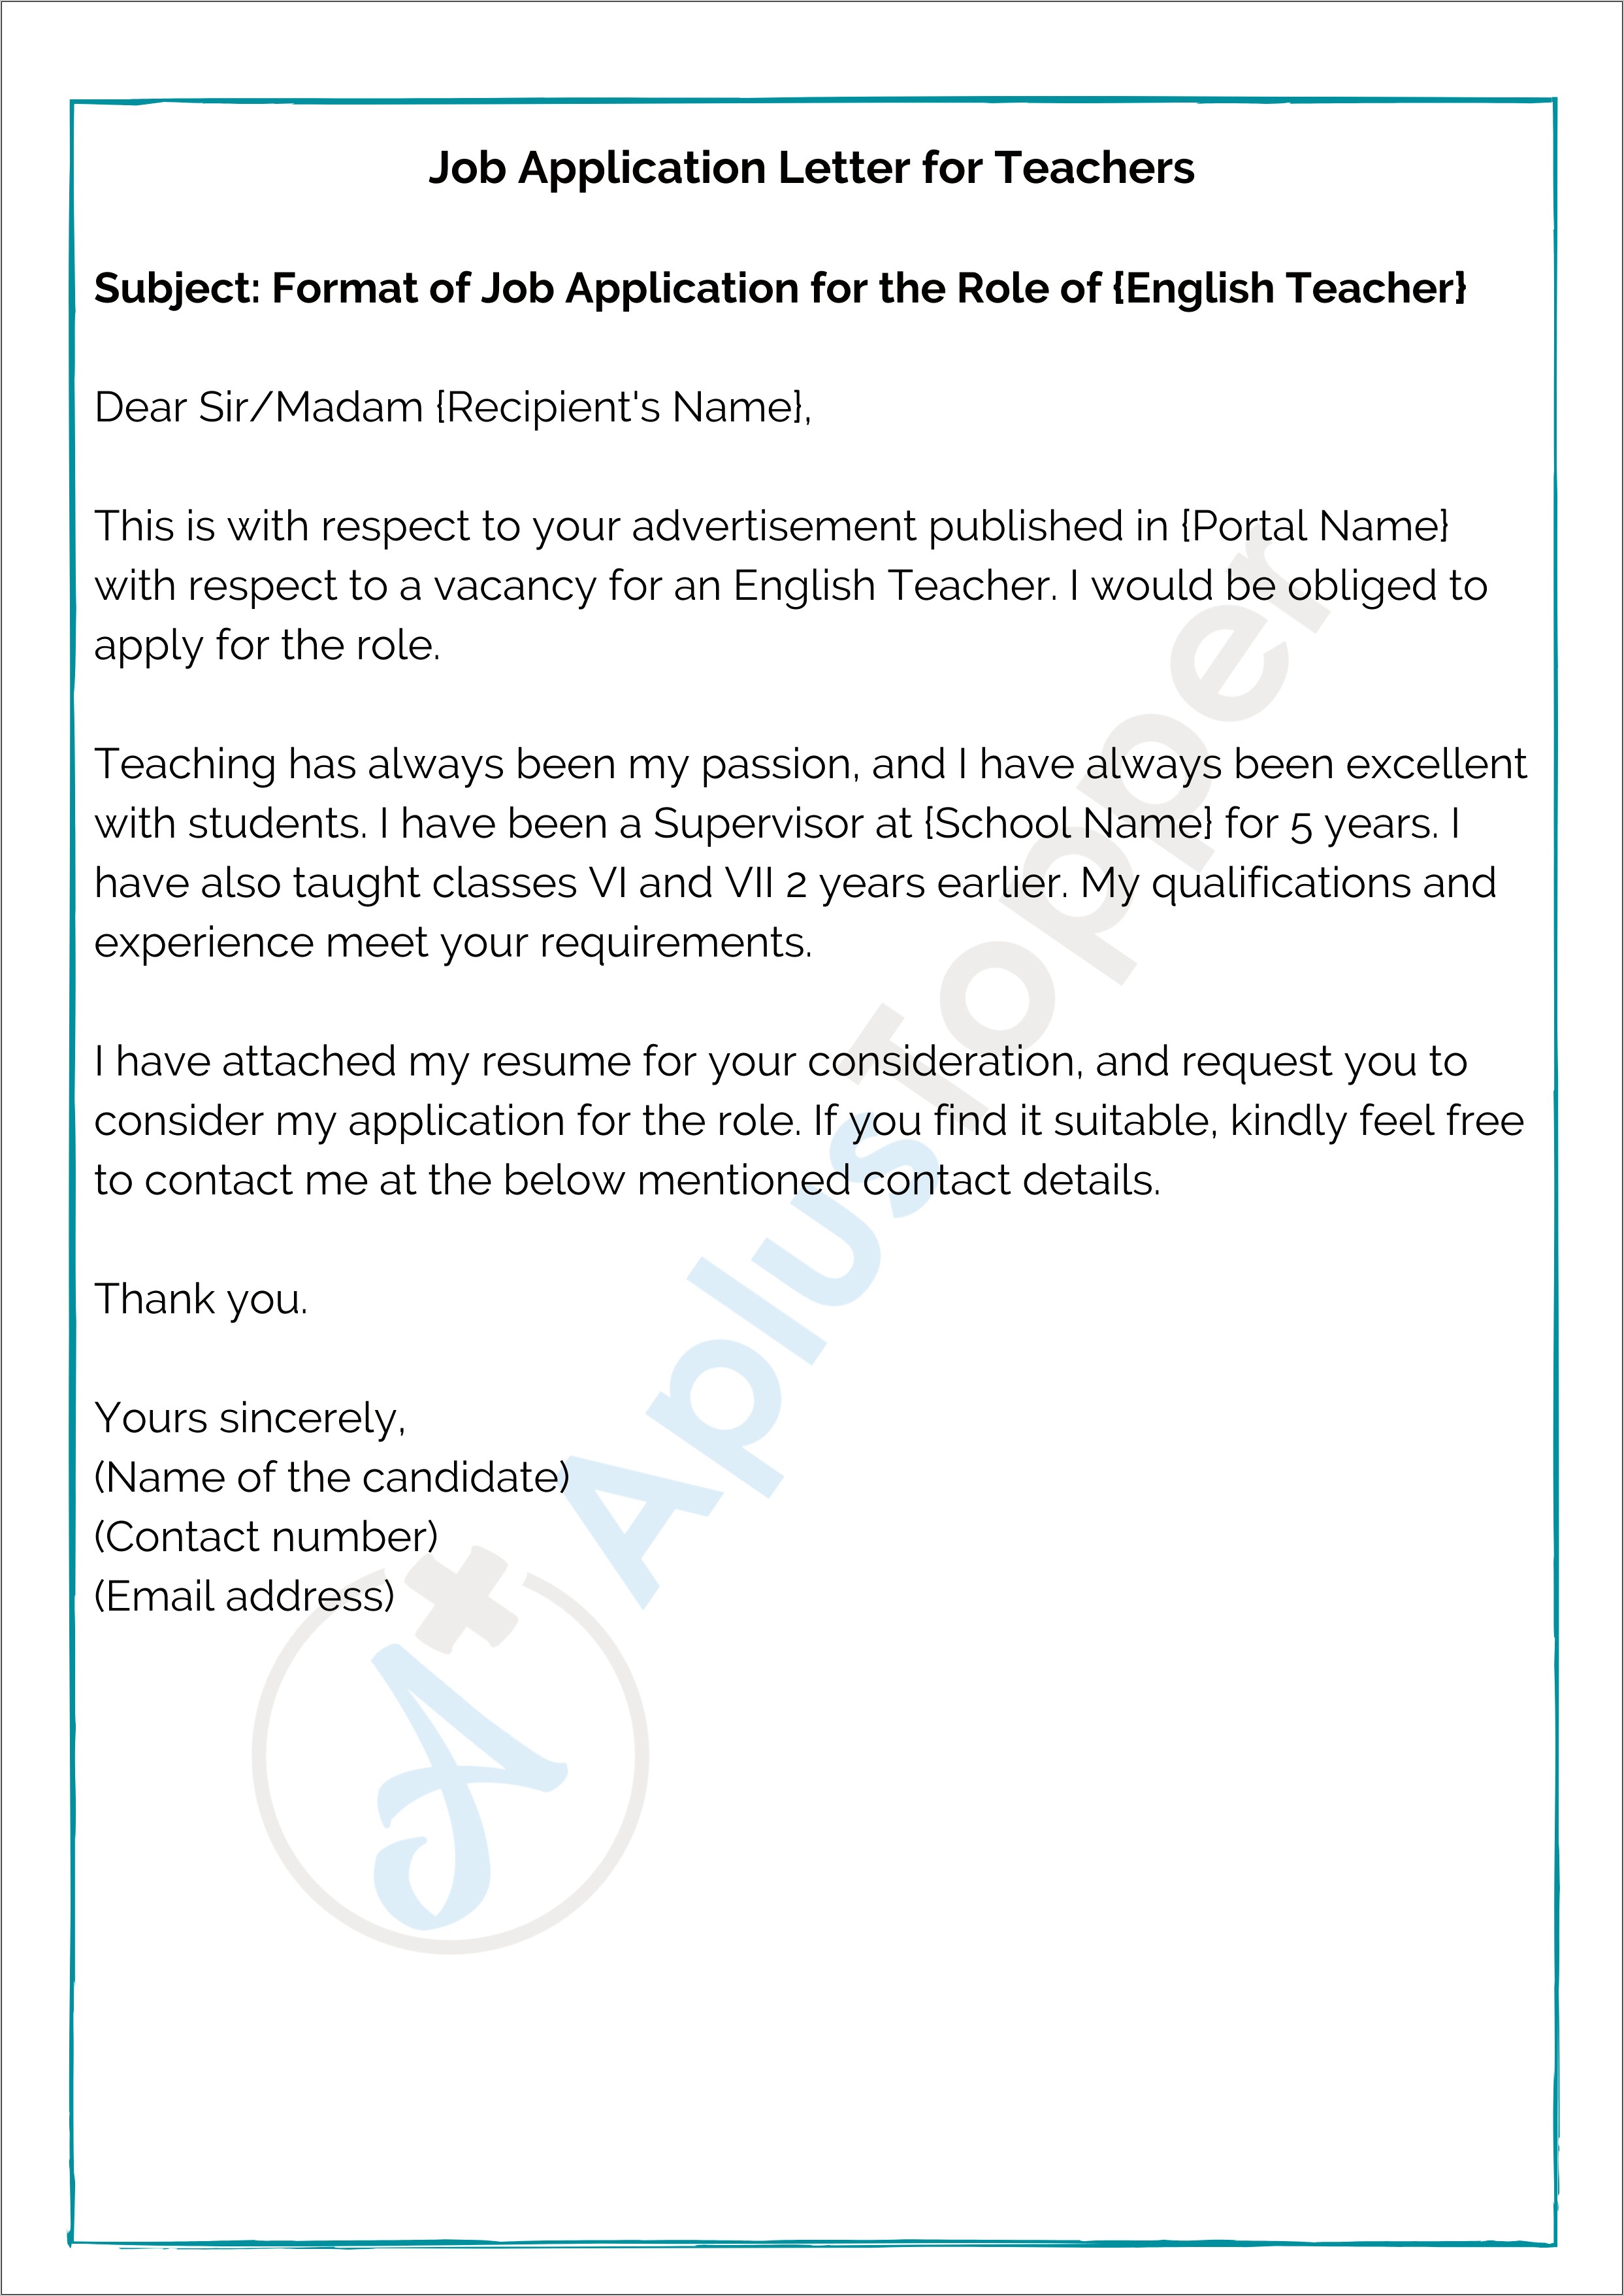 Subject For Sending Resume For Teacher Job